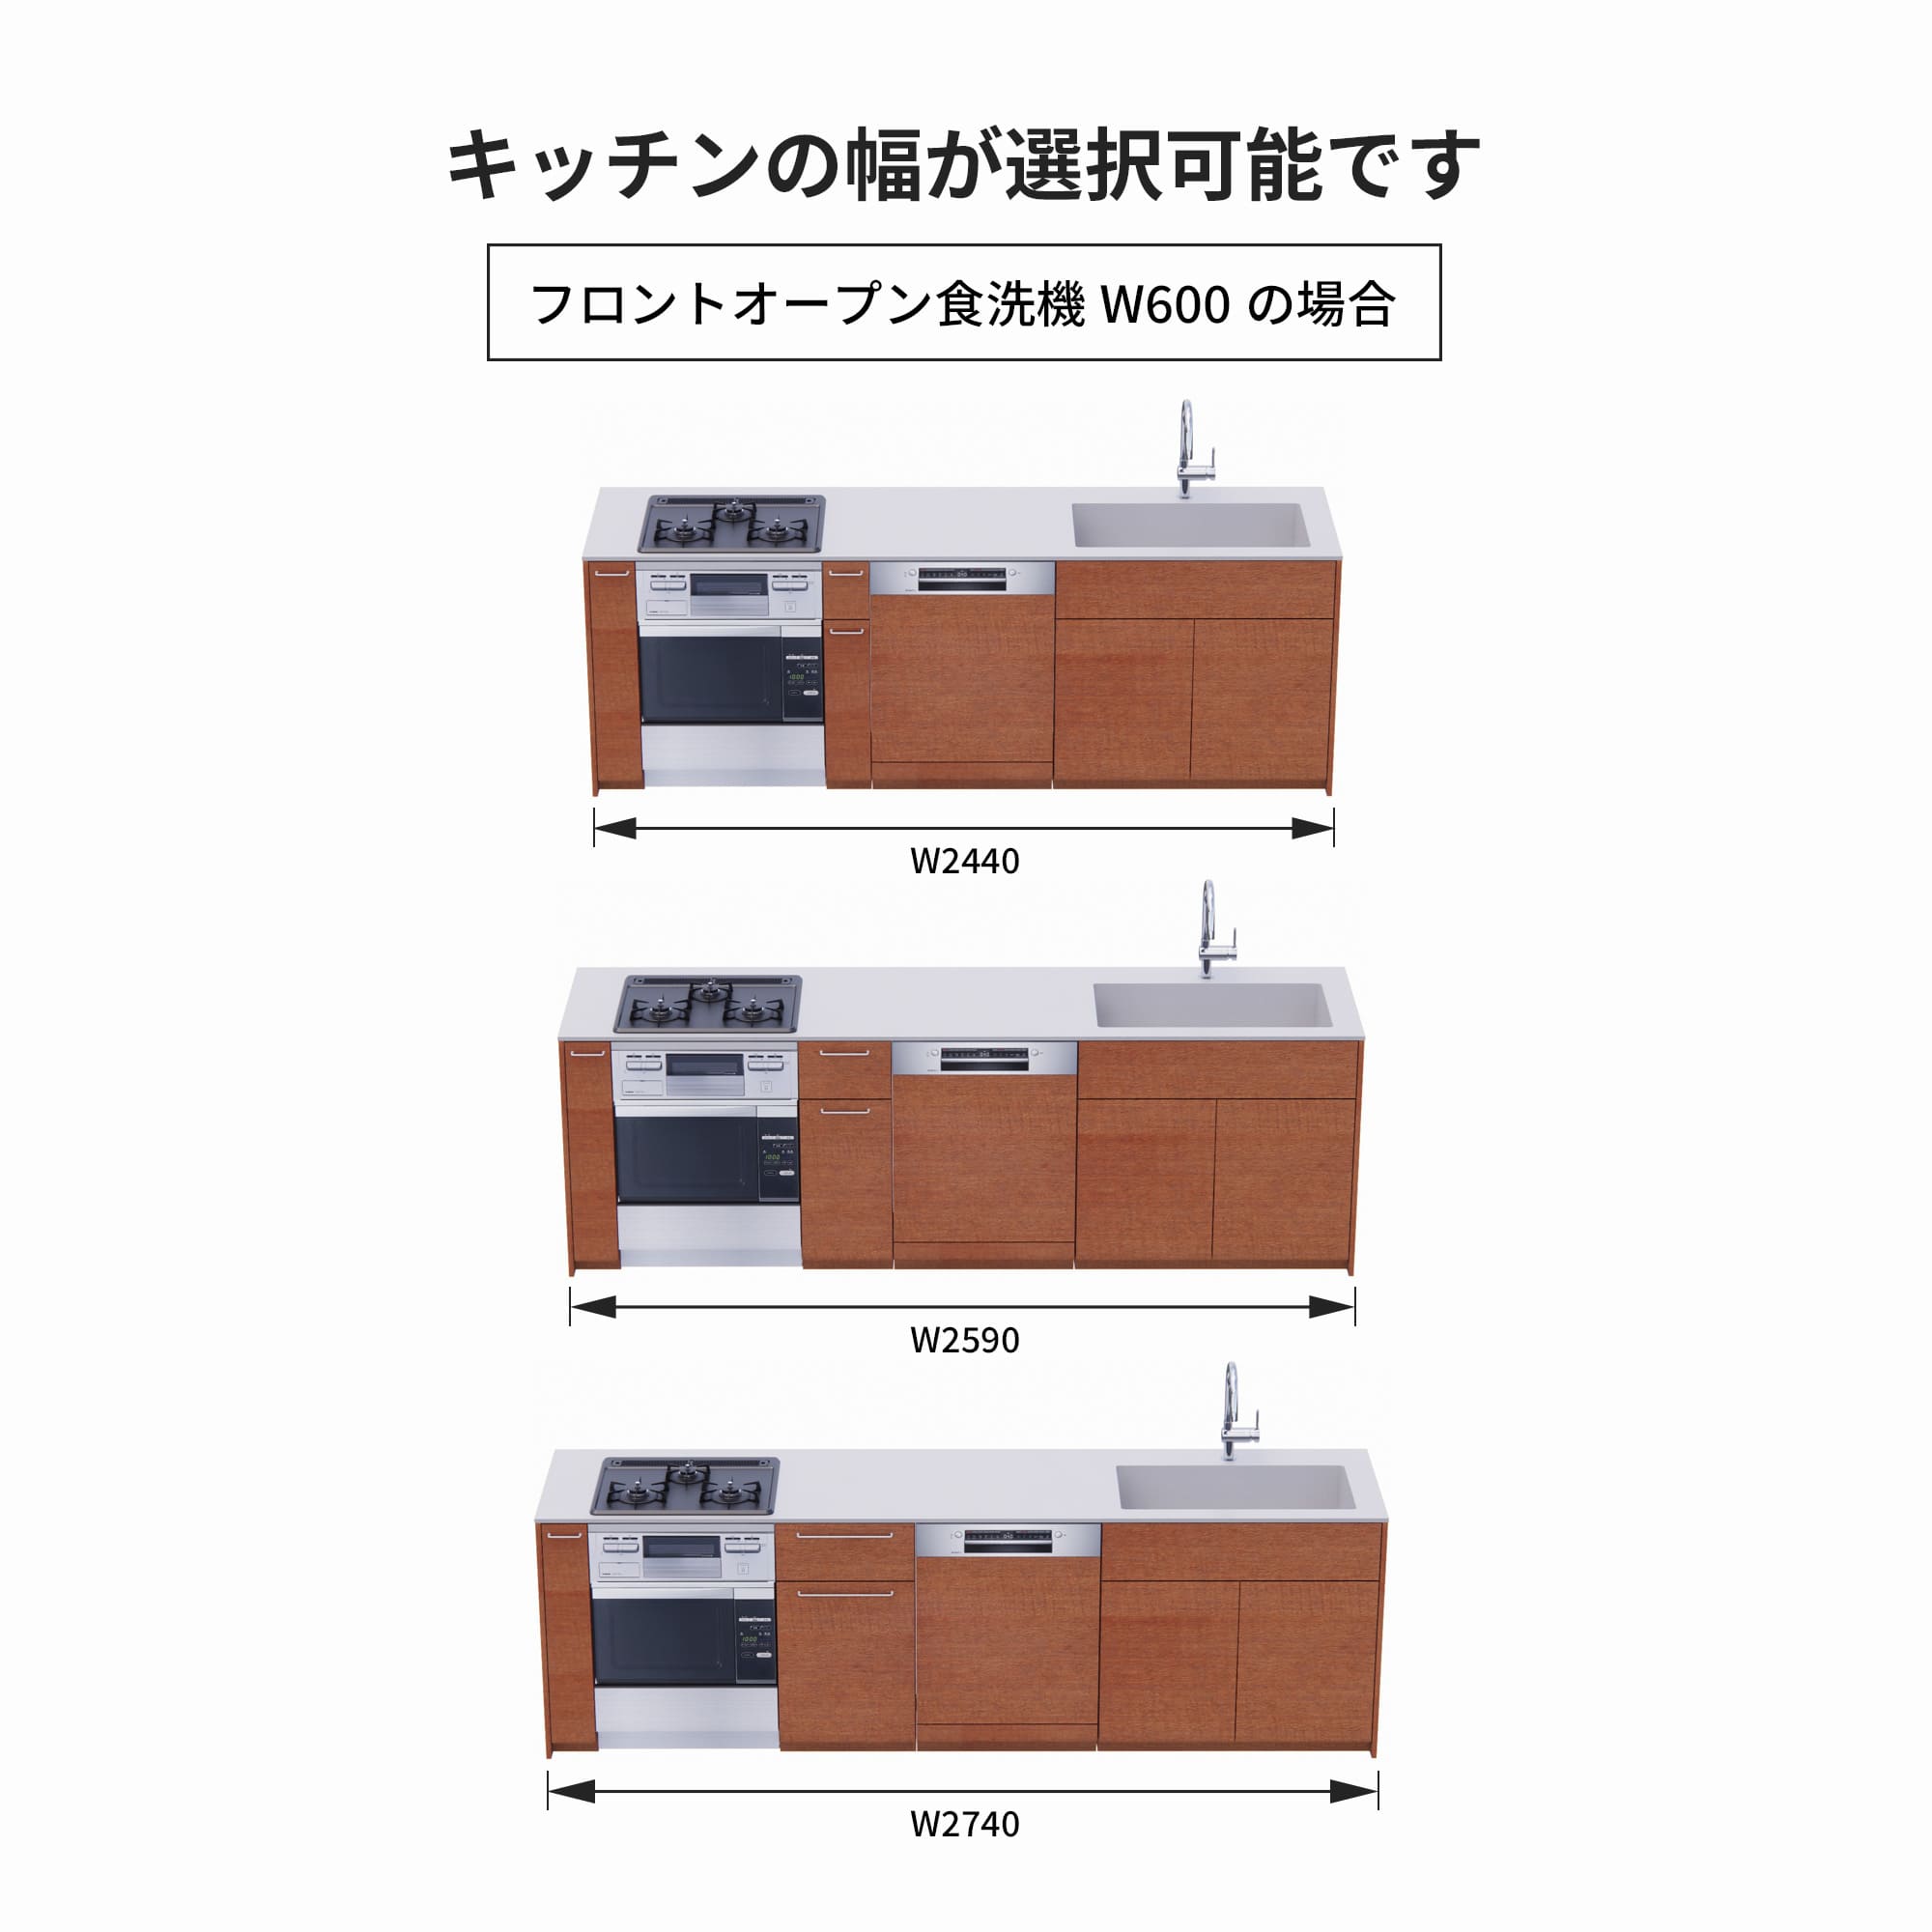 木製システムキッチン 対面型 W2440～2740・コンロあり / オーブンあり / 食洗機あり KB-KC022-46-G183 フロントオープン600の場合